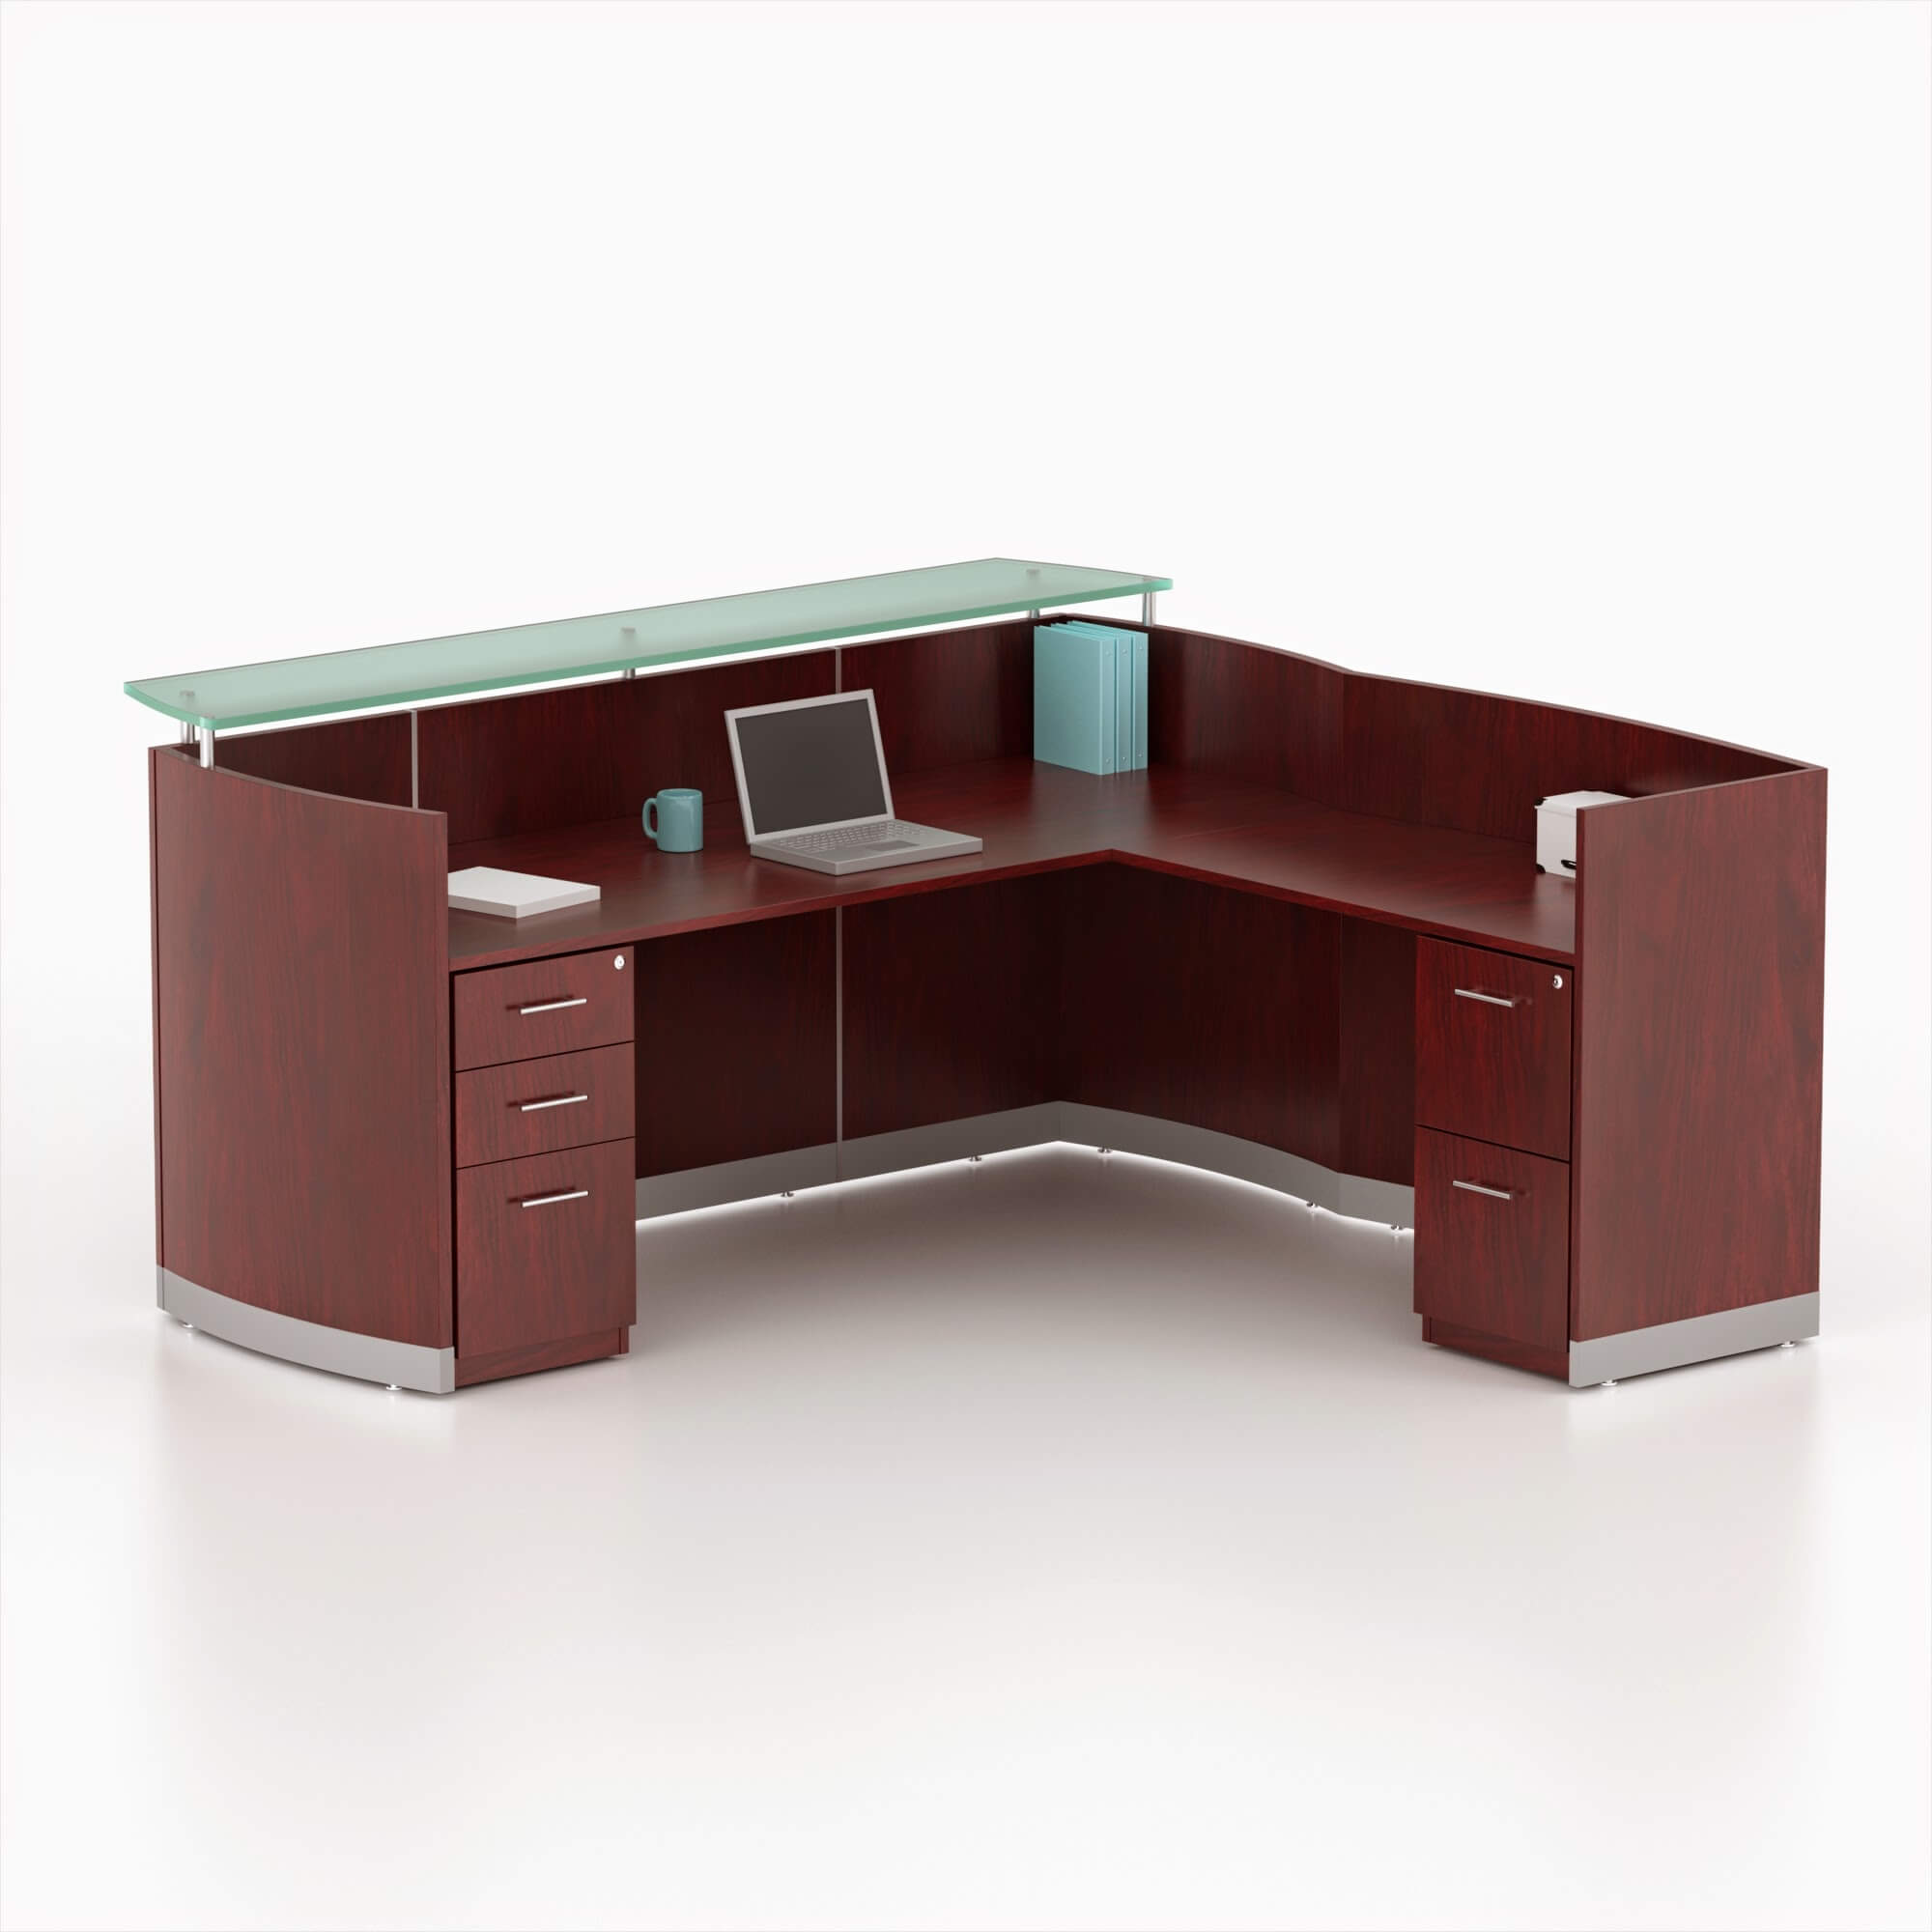 L shaped reeption desk CUB MNRSLBB MAHO MAY